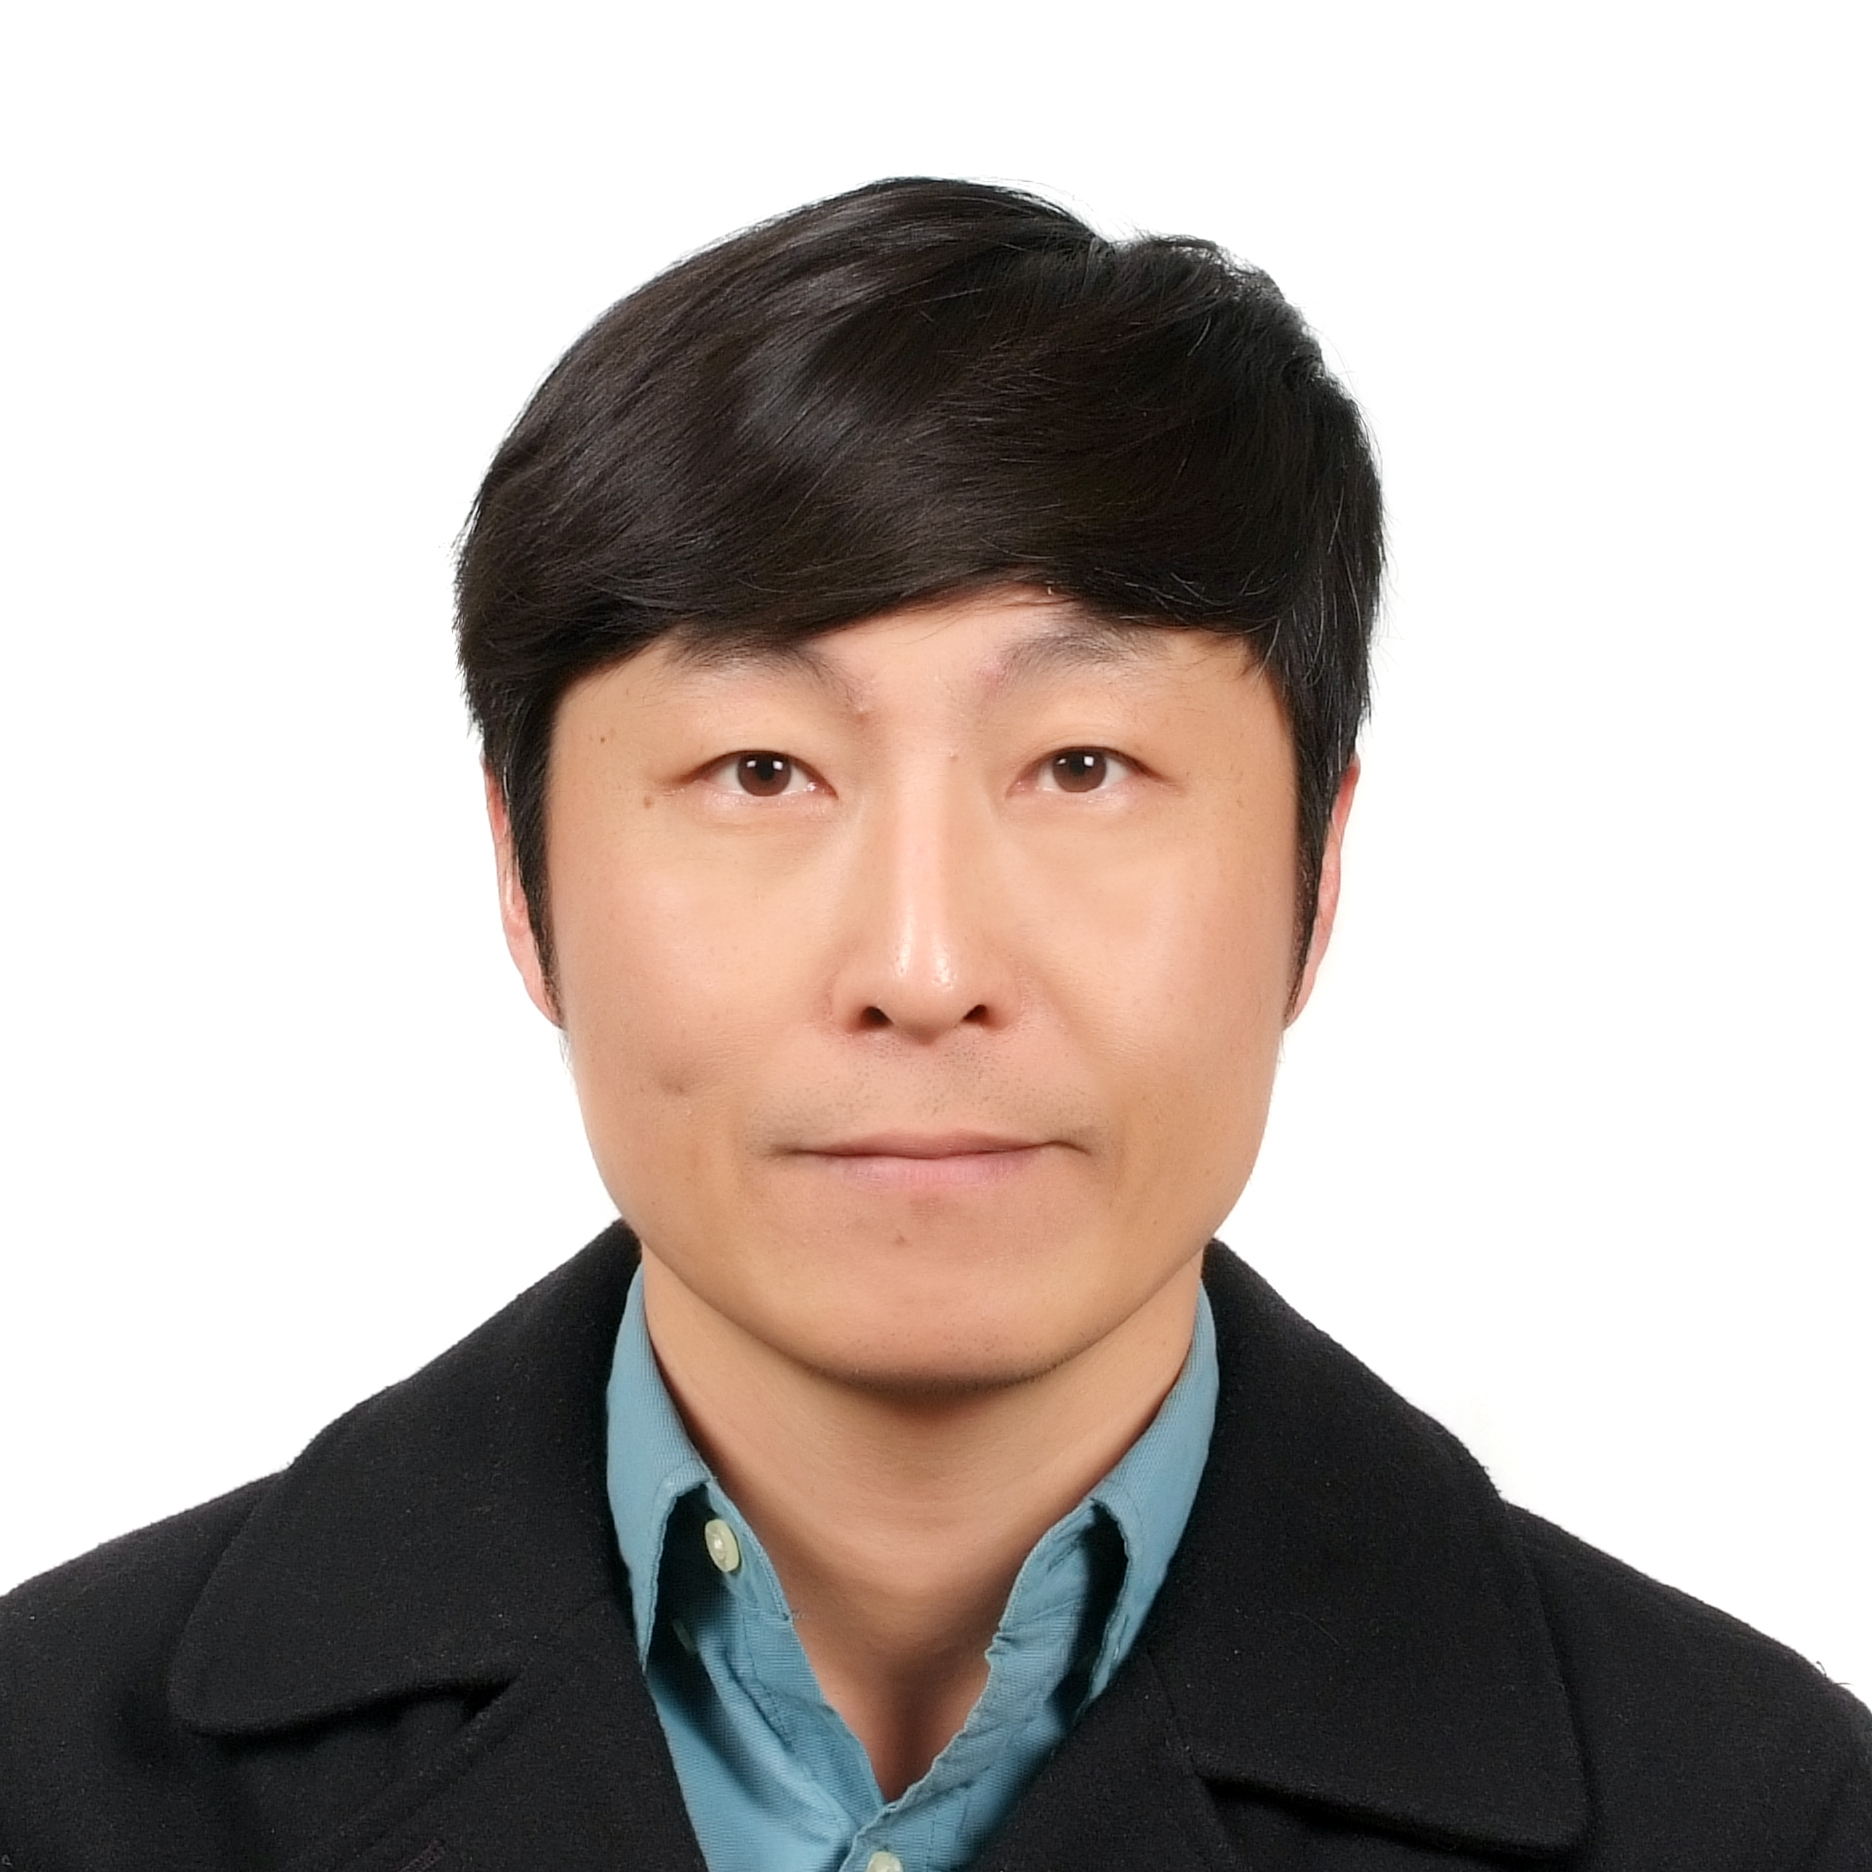 Profile image of Dr. Jaesuk Kwon